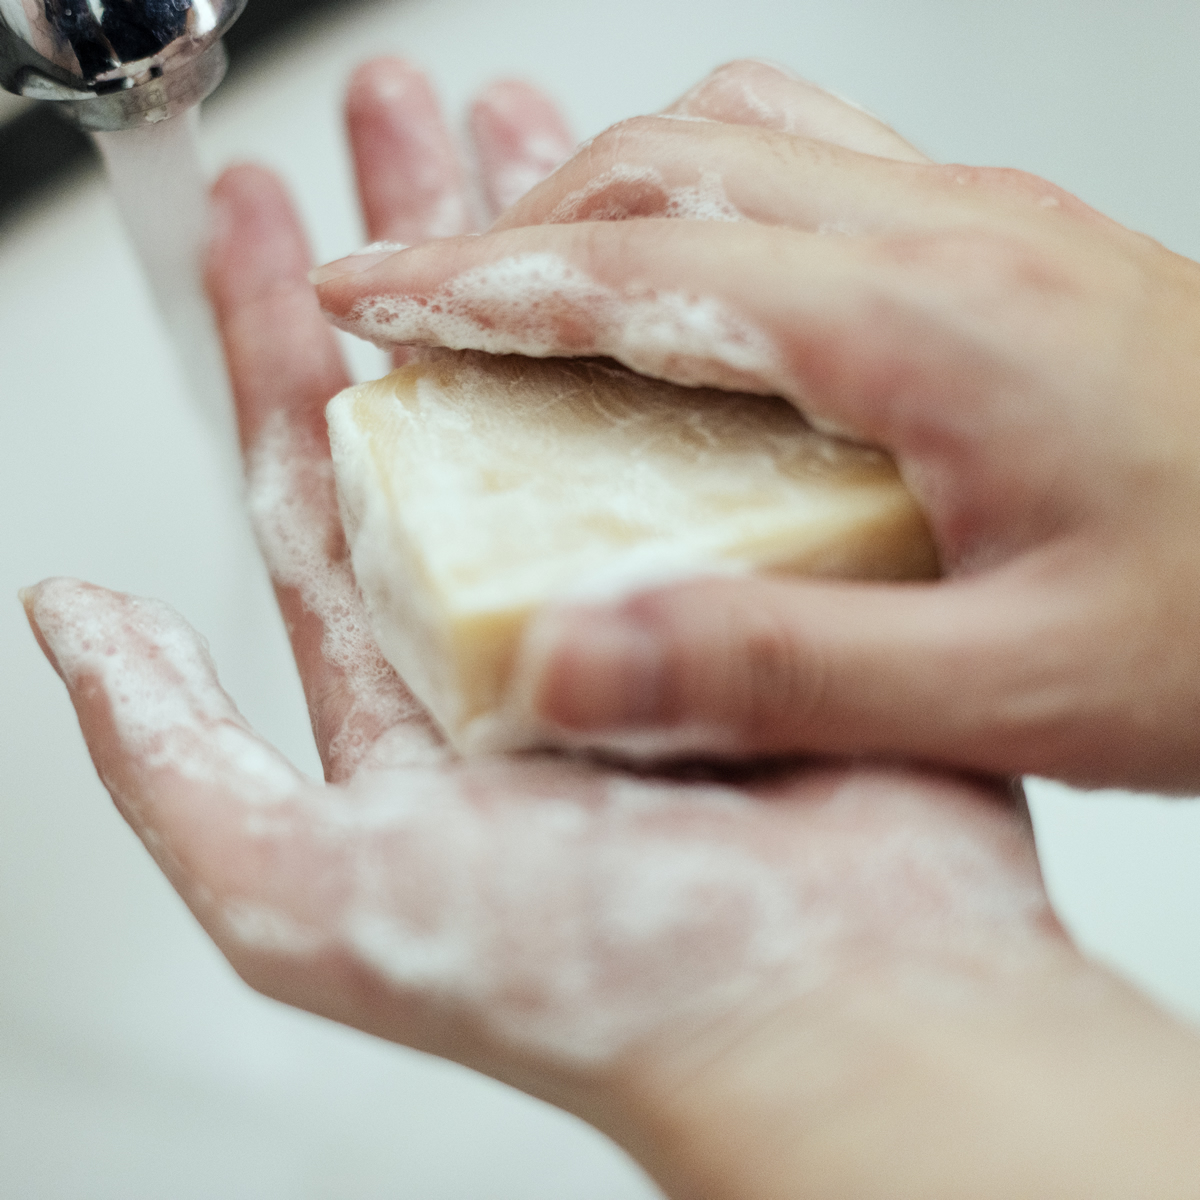 polilla dramático lavandería El jabón en barra reseca tu piel? Conoce las alternativas – Salud y Vida